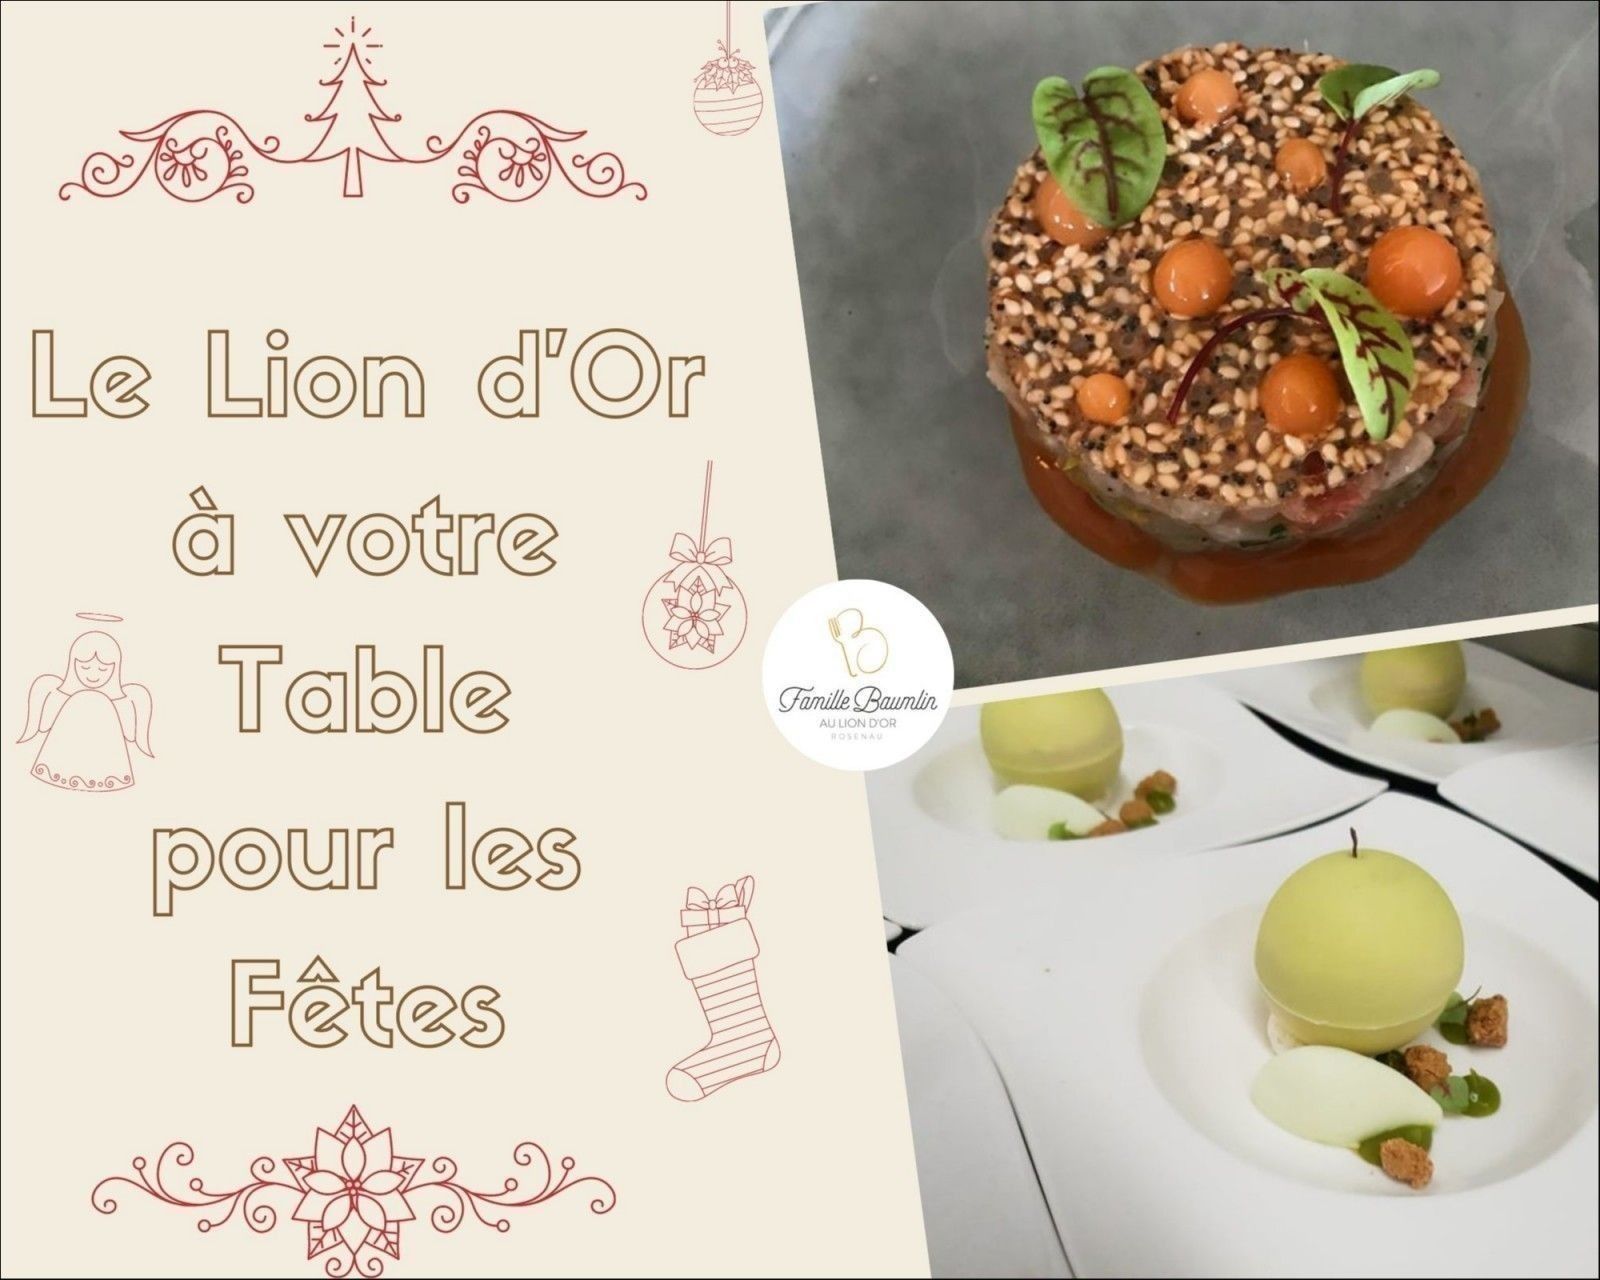 AU LION D'OR - Foie gras, saumon mariné...